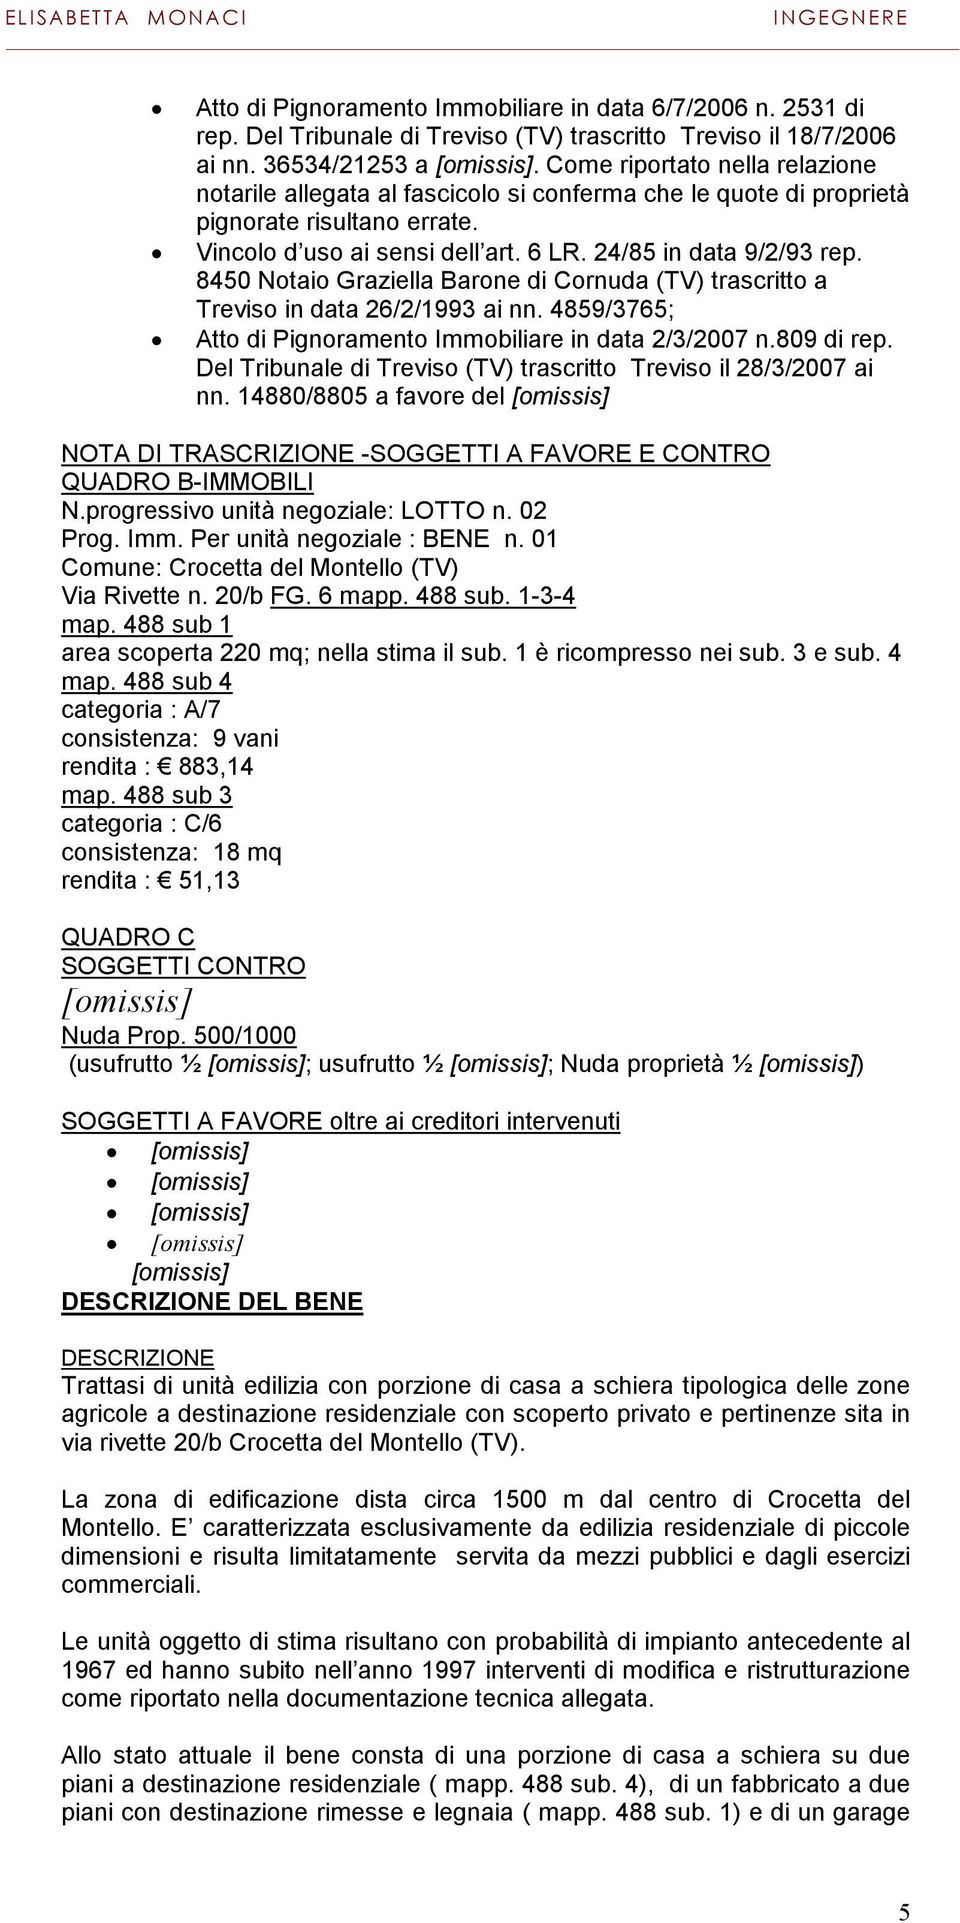 8450 Notaio Graziella Barone di Cornuda (TV) trascritto a Treviso in data 26/2/1993 ai nn. 4859/3765; Atto di Pignoramento Immobiliare in data 2/3/2007 n.809 di rep.